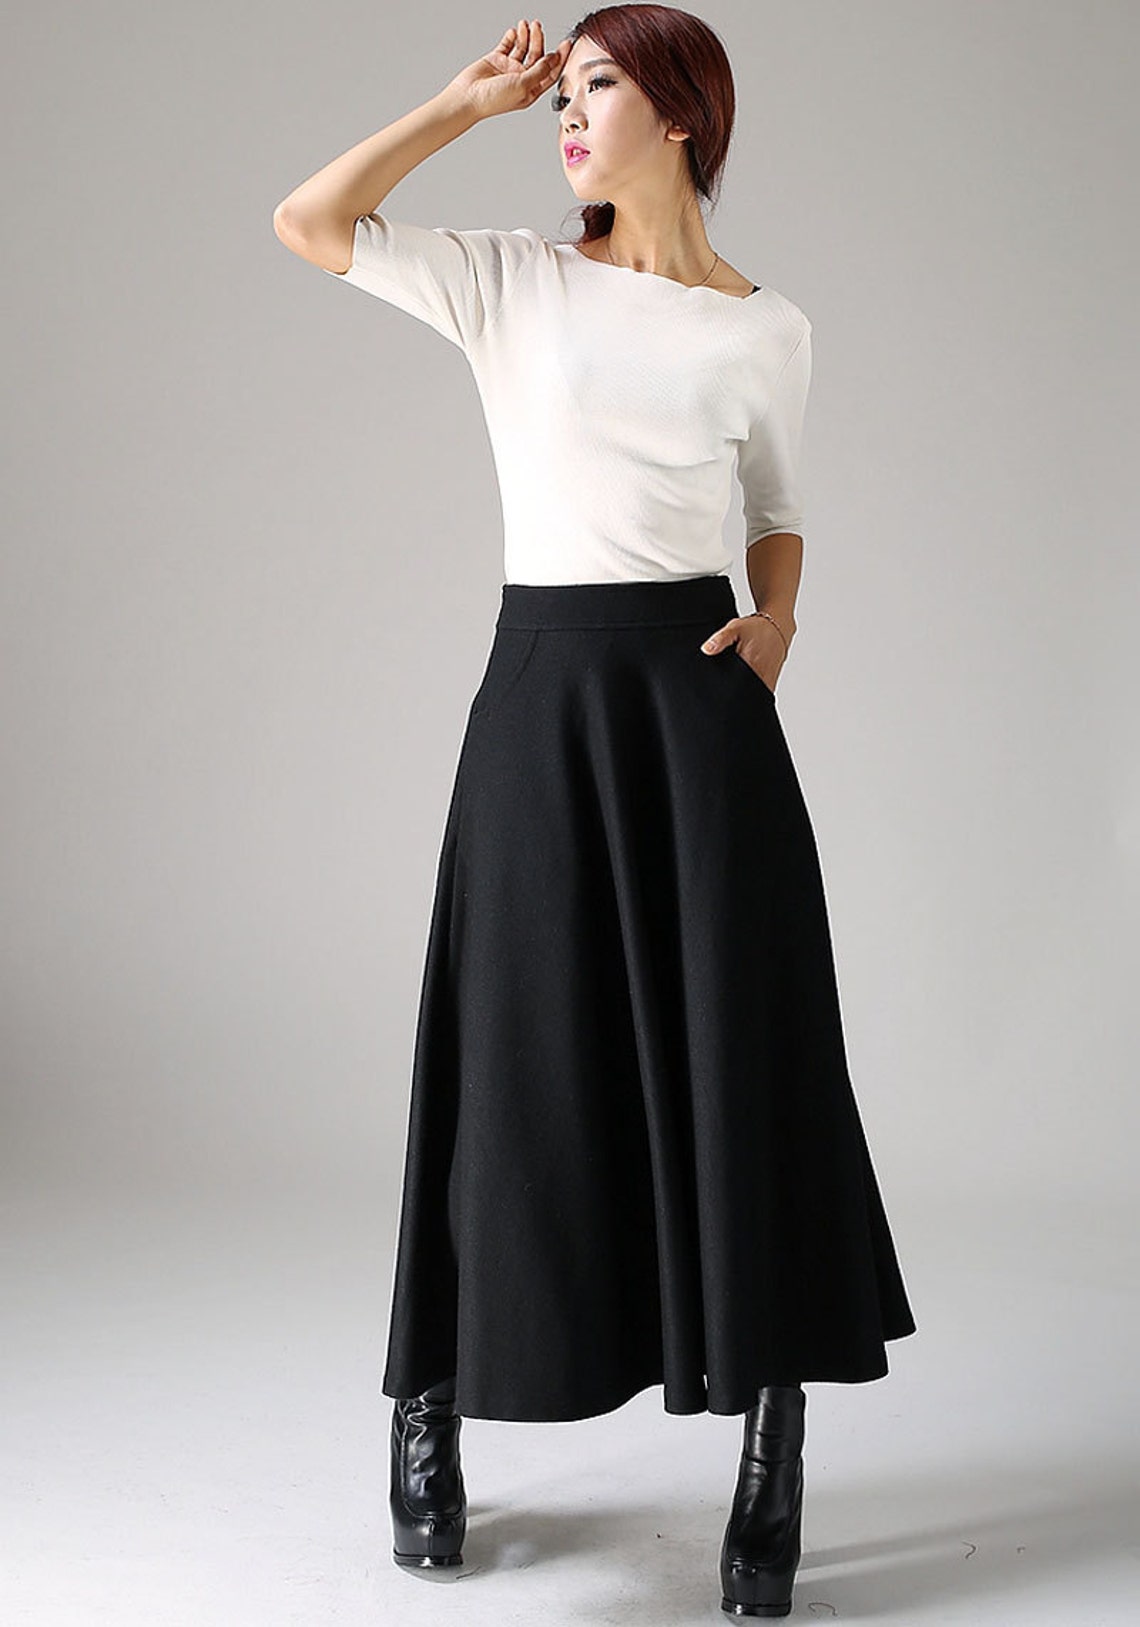 Vintage 1950s Maxi Wool skirt Long skirt Black skirt A Line | Etsy